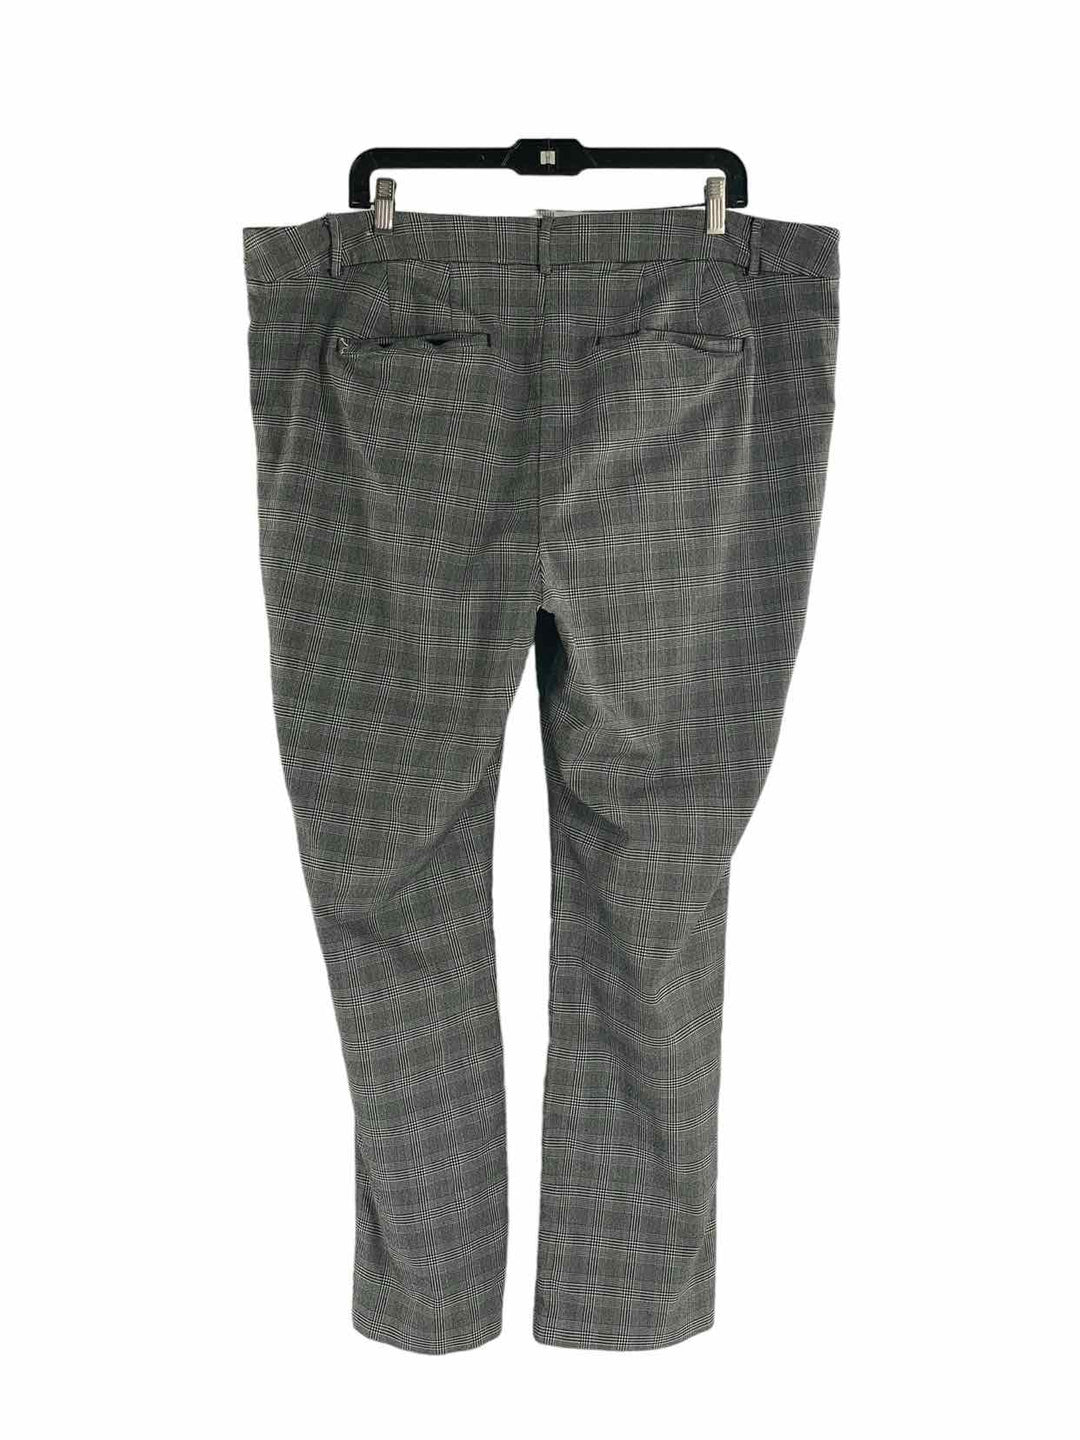 Lane Bryant Size 24 Gray Plaid Pants